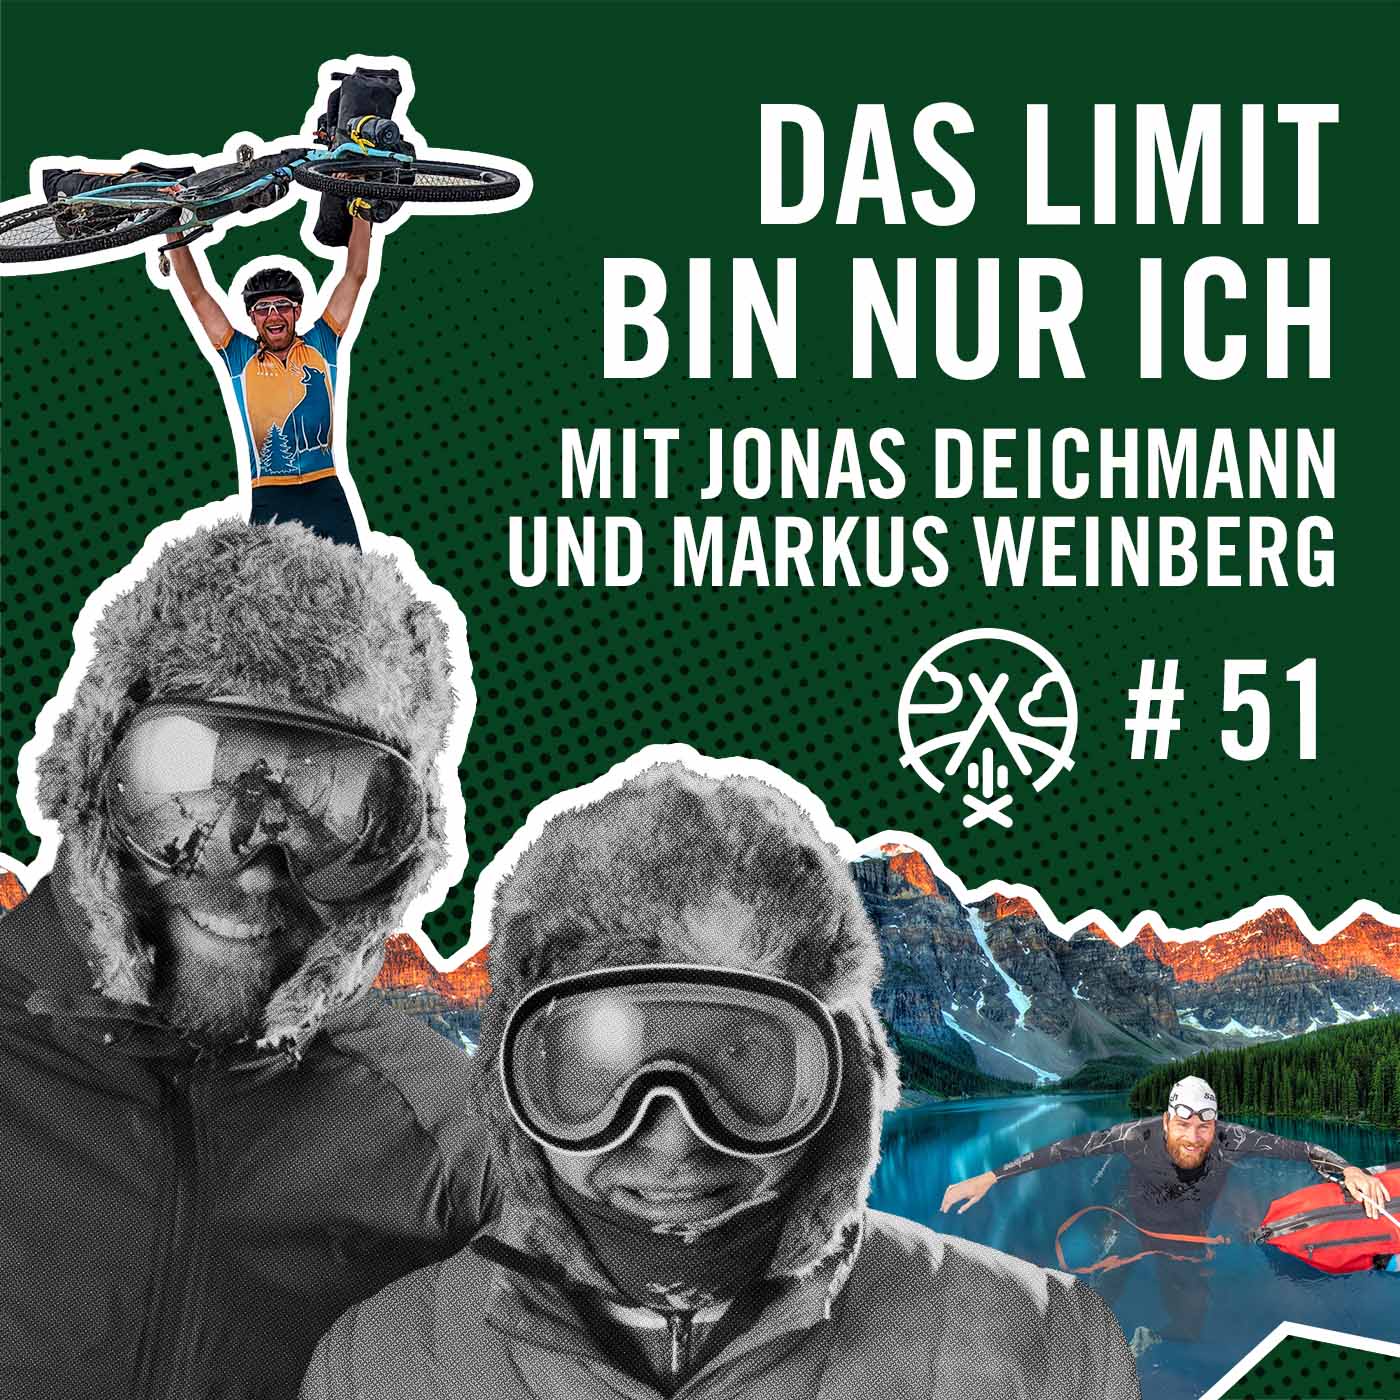 Das Limit bin nur ich mit Jonas Deichmann und Markus Weinberg #51